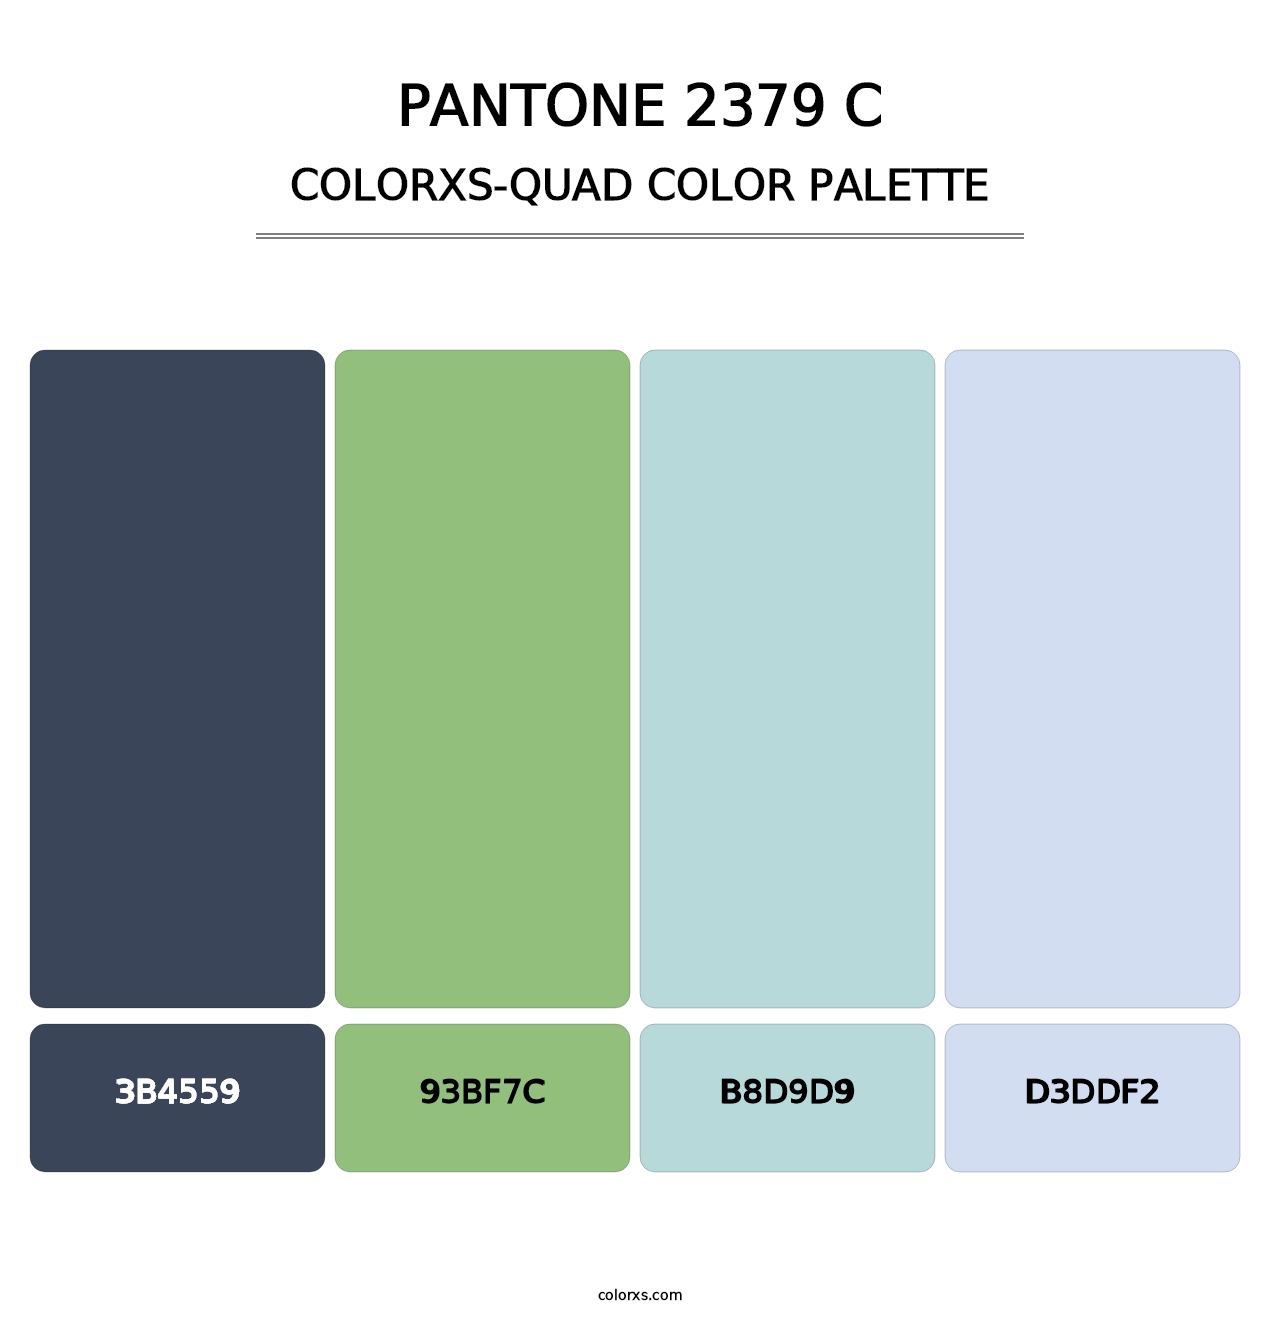 PANTONE 2379 C - Colorxs Quad Palette